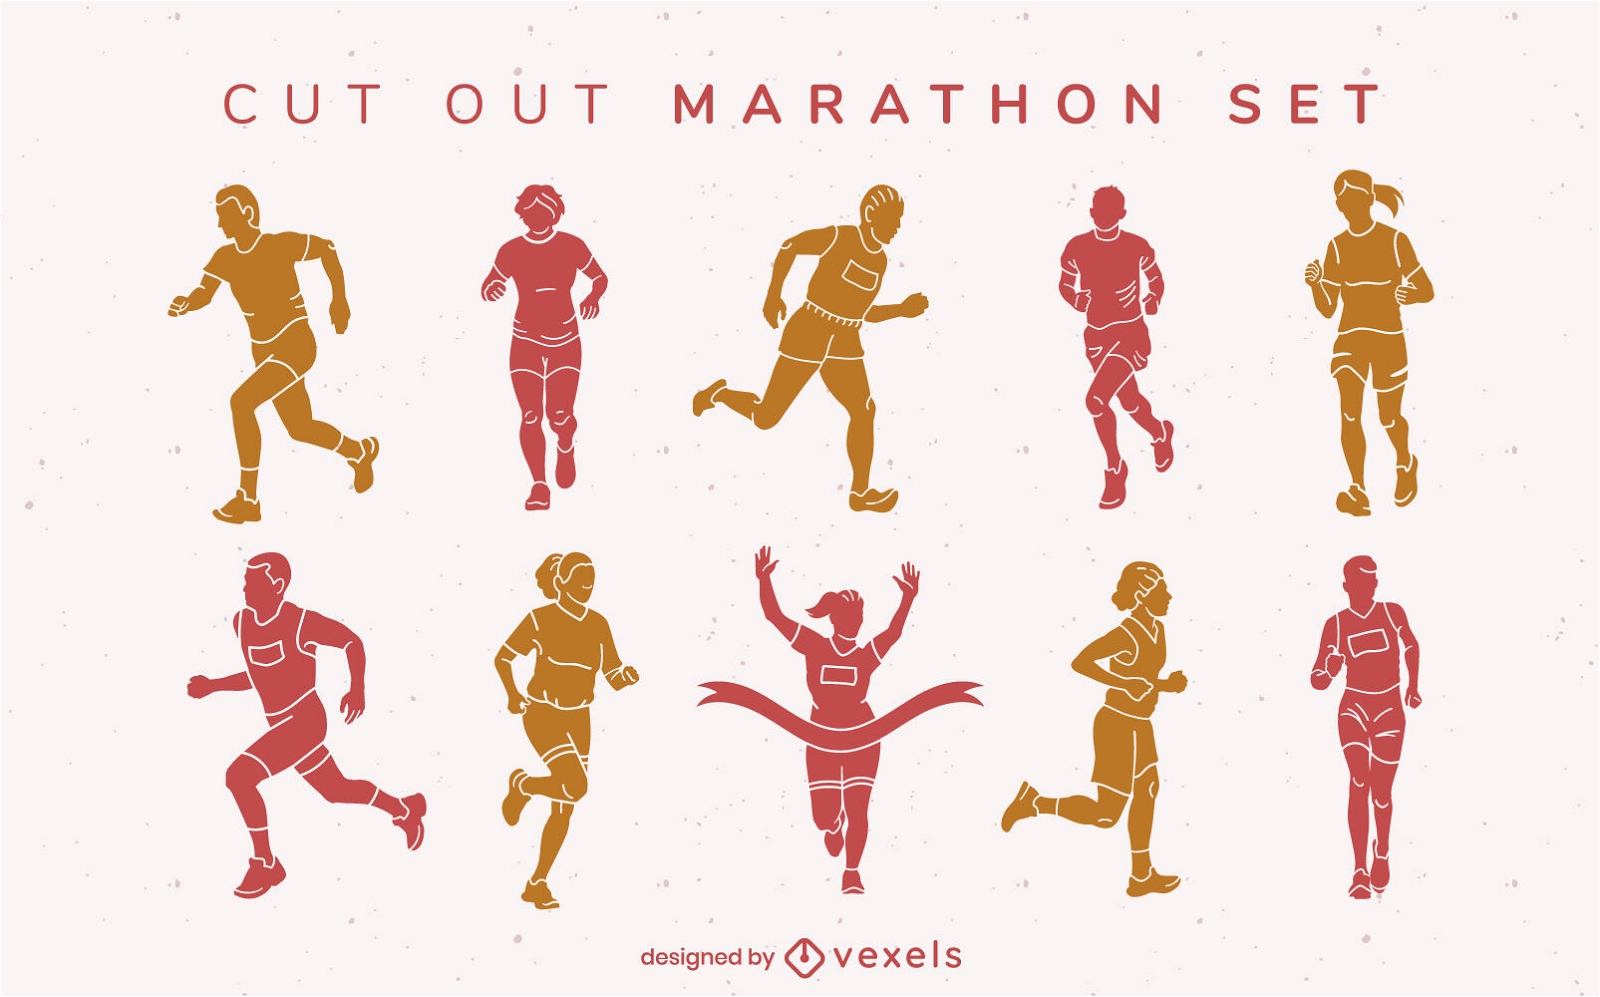 Maratona correndo pessoas esporte cut out set